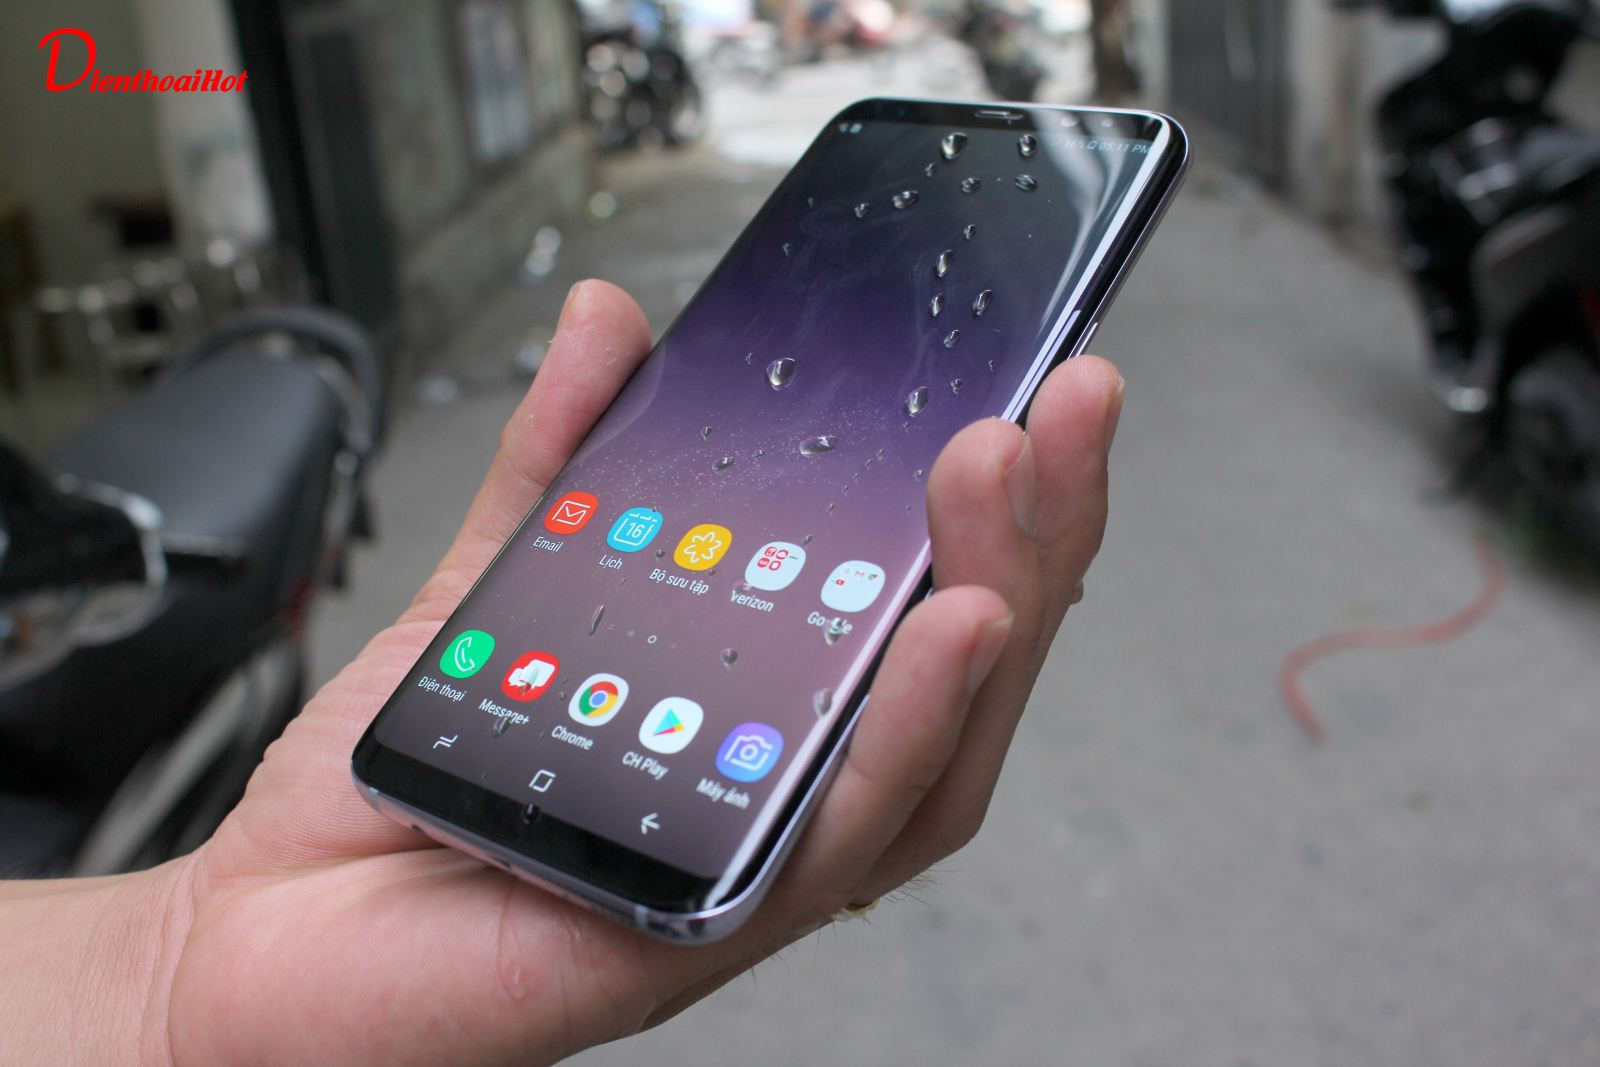 Samsung Galaxy S8 Plus Hàn Quốc với màn hình tràn vô cực